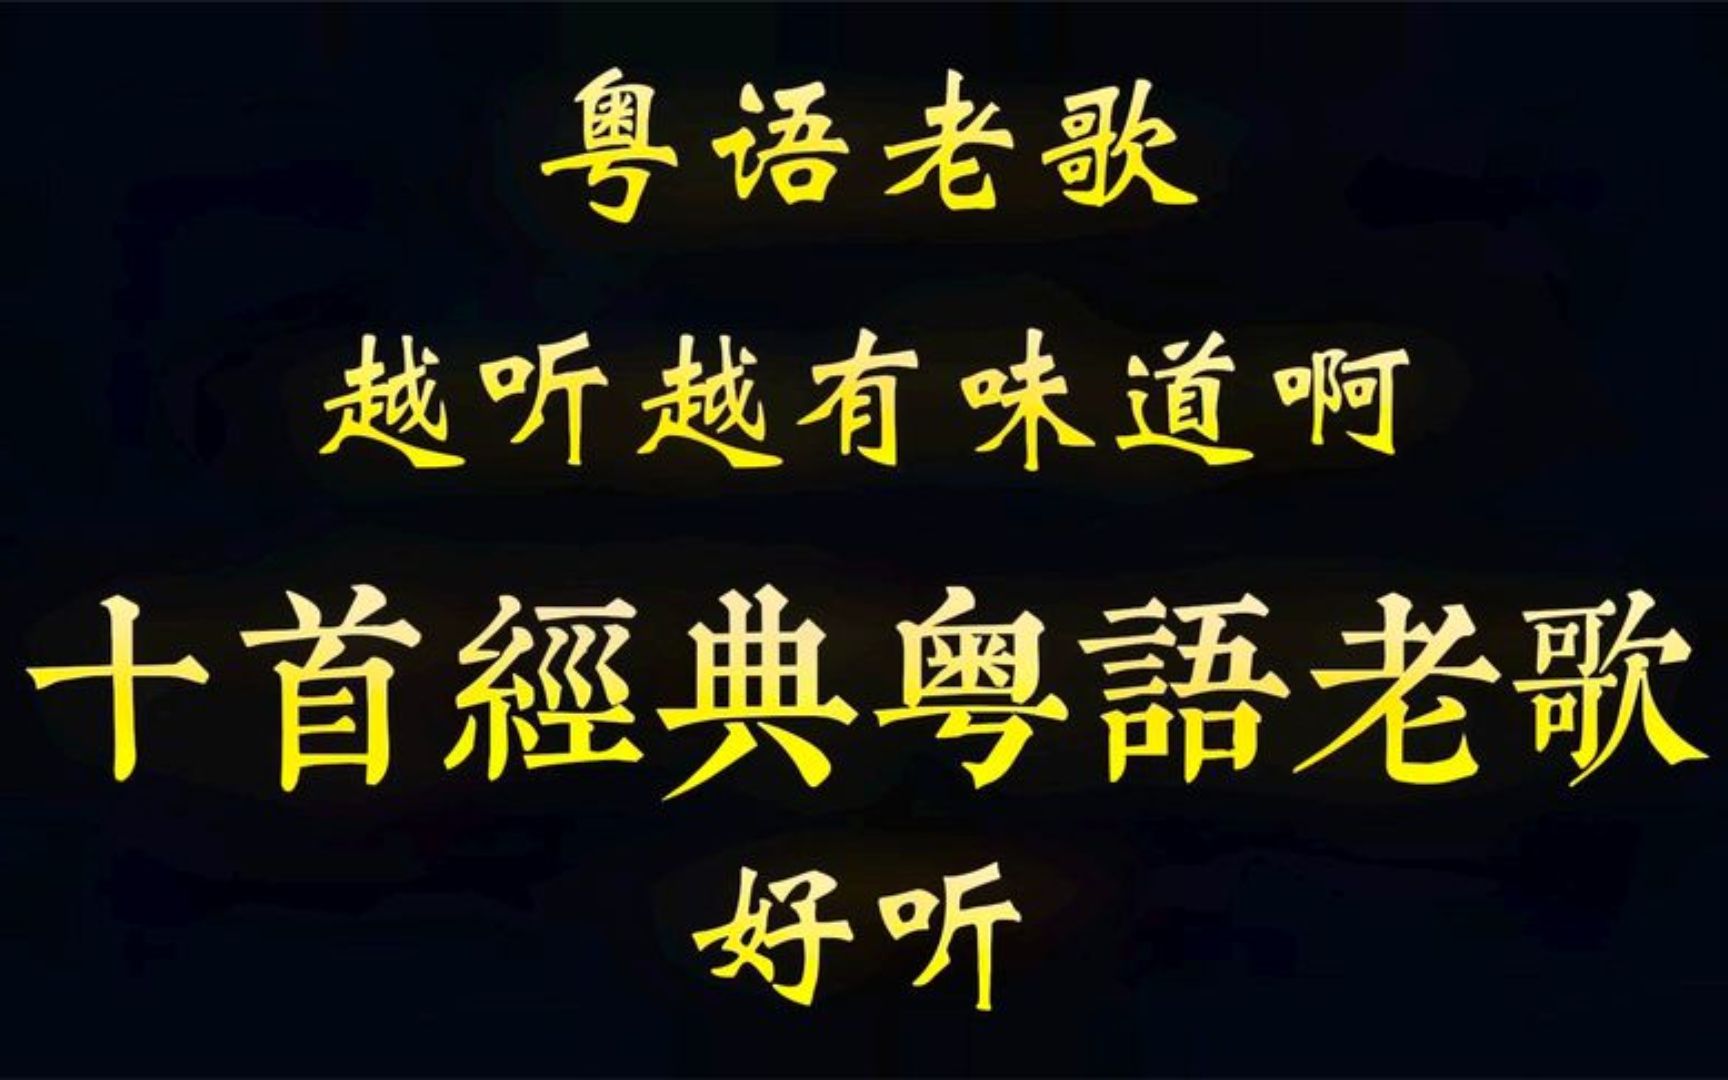 粤语老歌是越听越有味道啊，十首经典粤语老歌，每首都好听啊